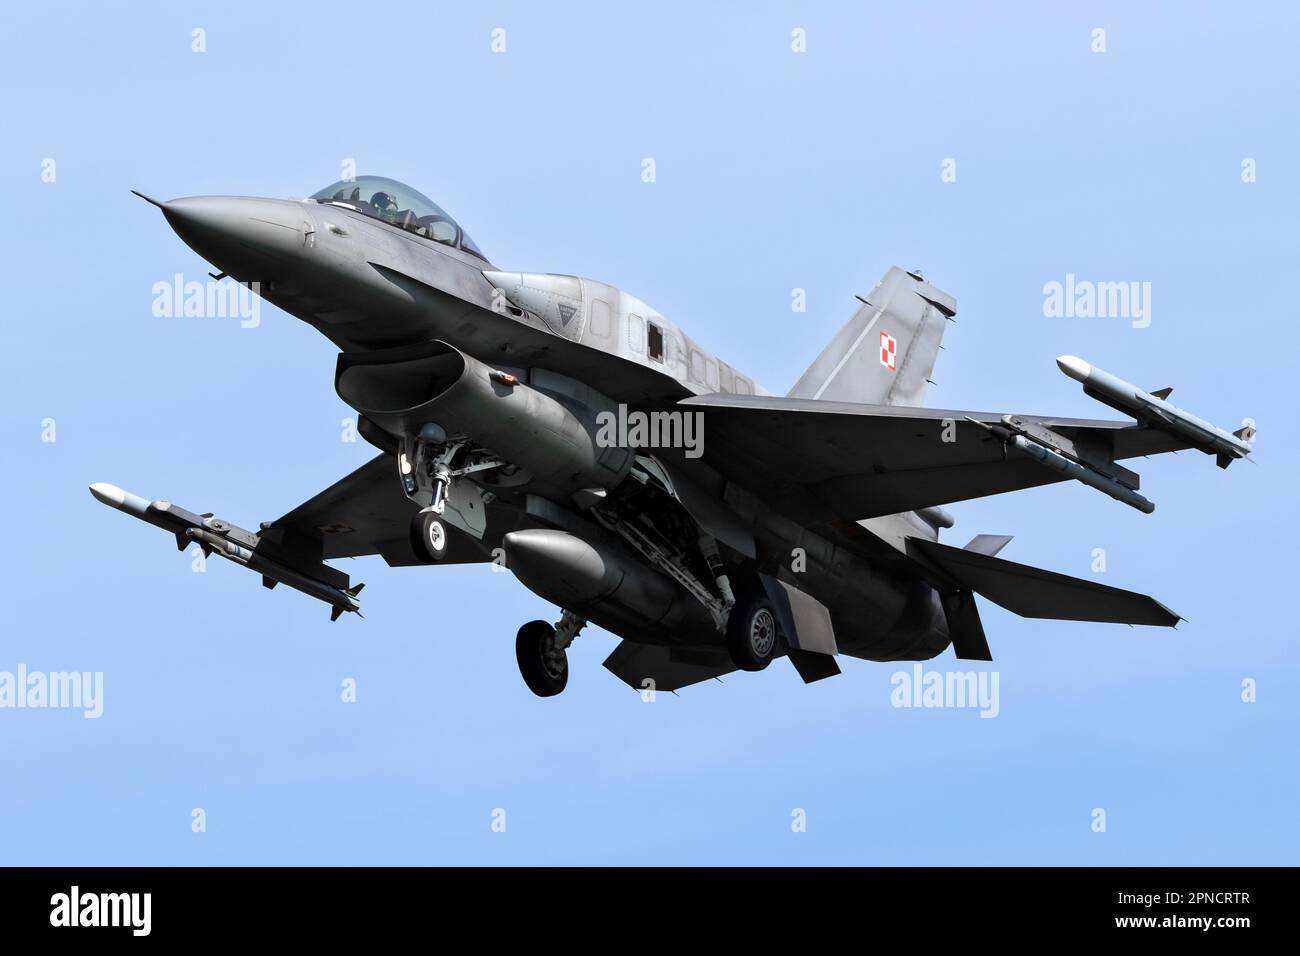 Un avion de chasse F-16 de la Force aérienne polonaise en approche finale à la base aérienne de Leeuwarden. Leeuwarden, pays-Bas - 19 avril 2018 Banque D'Images